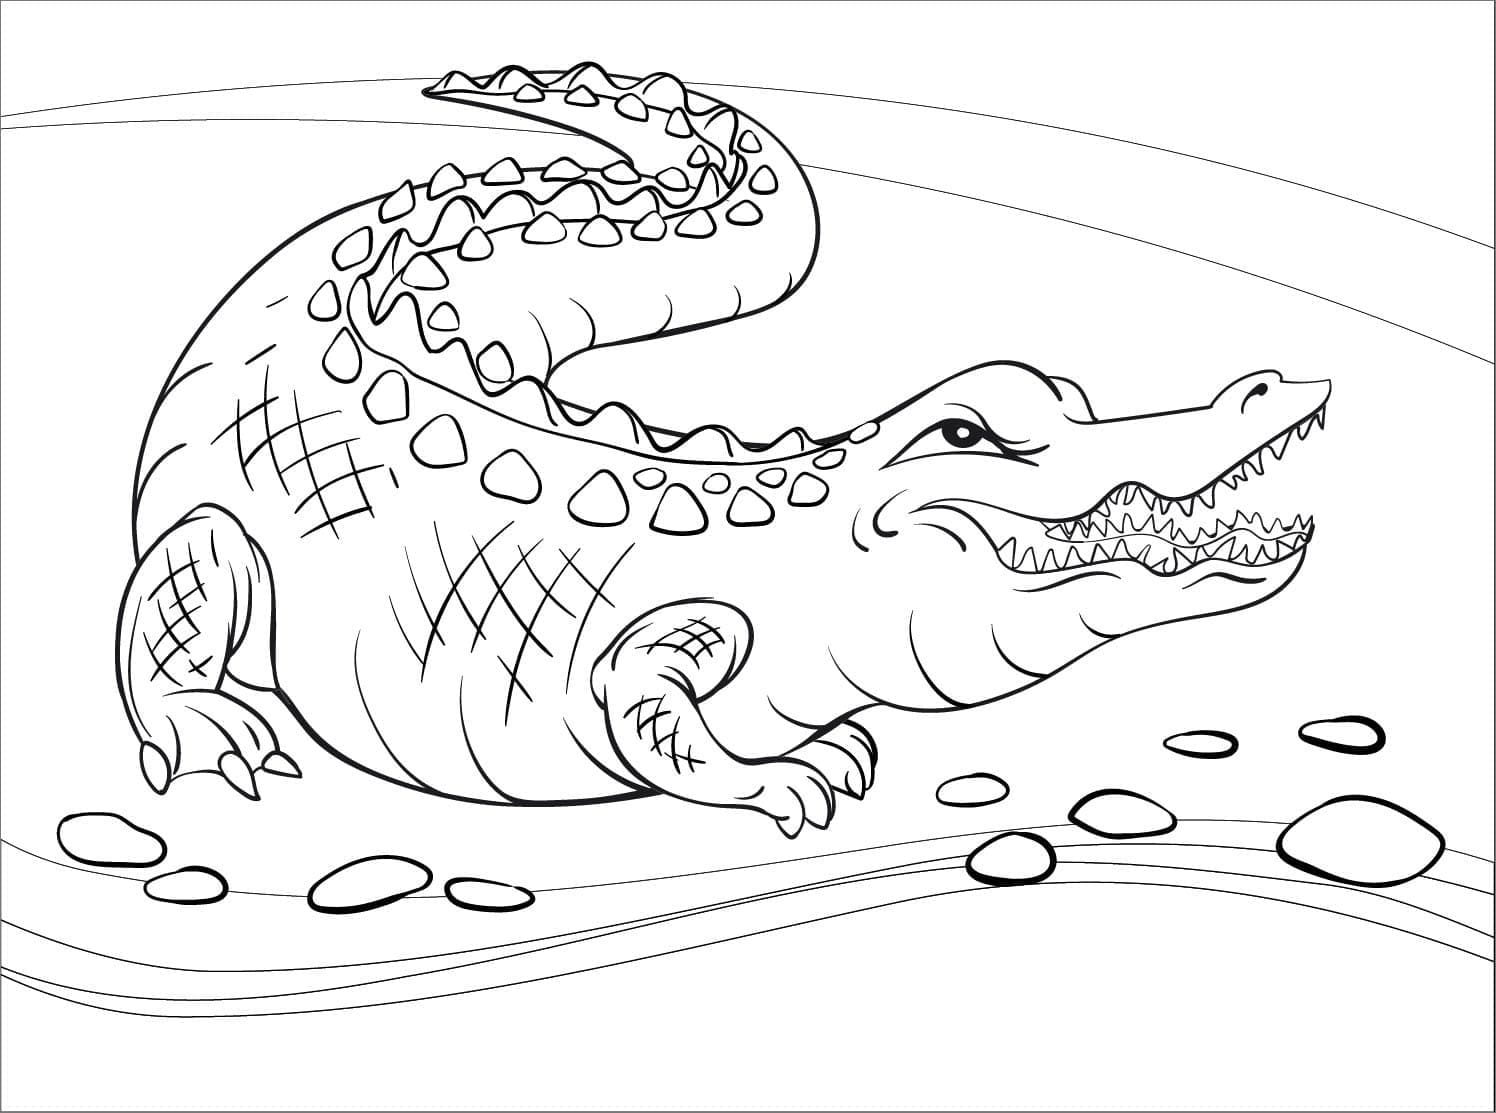 Coloriage Alligator en Colère à imprimer